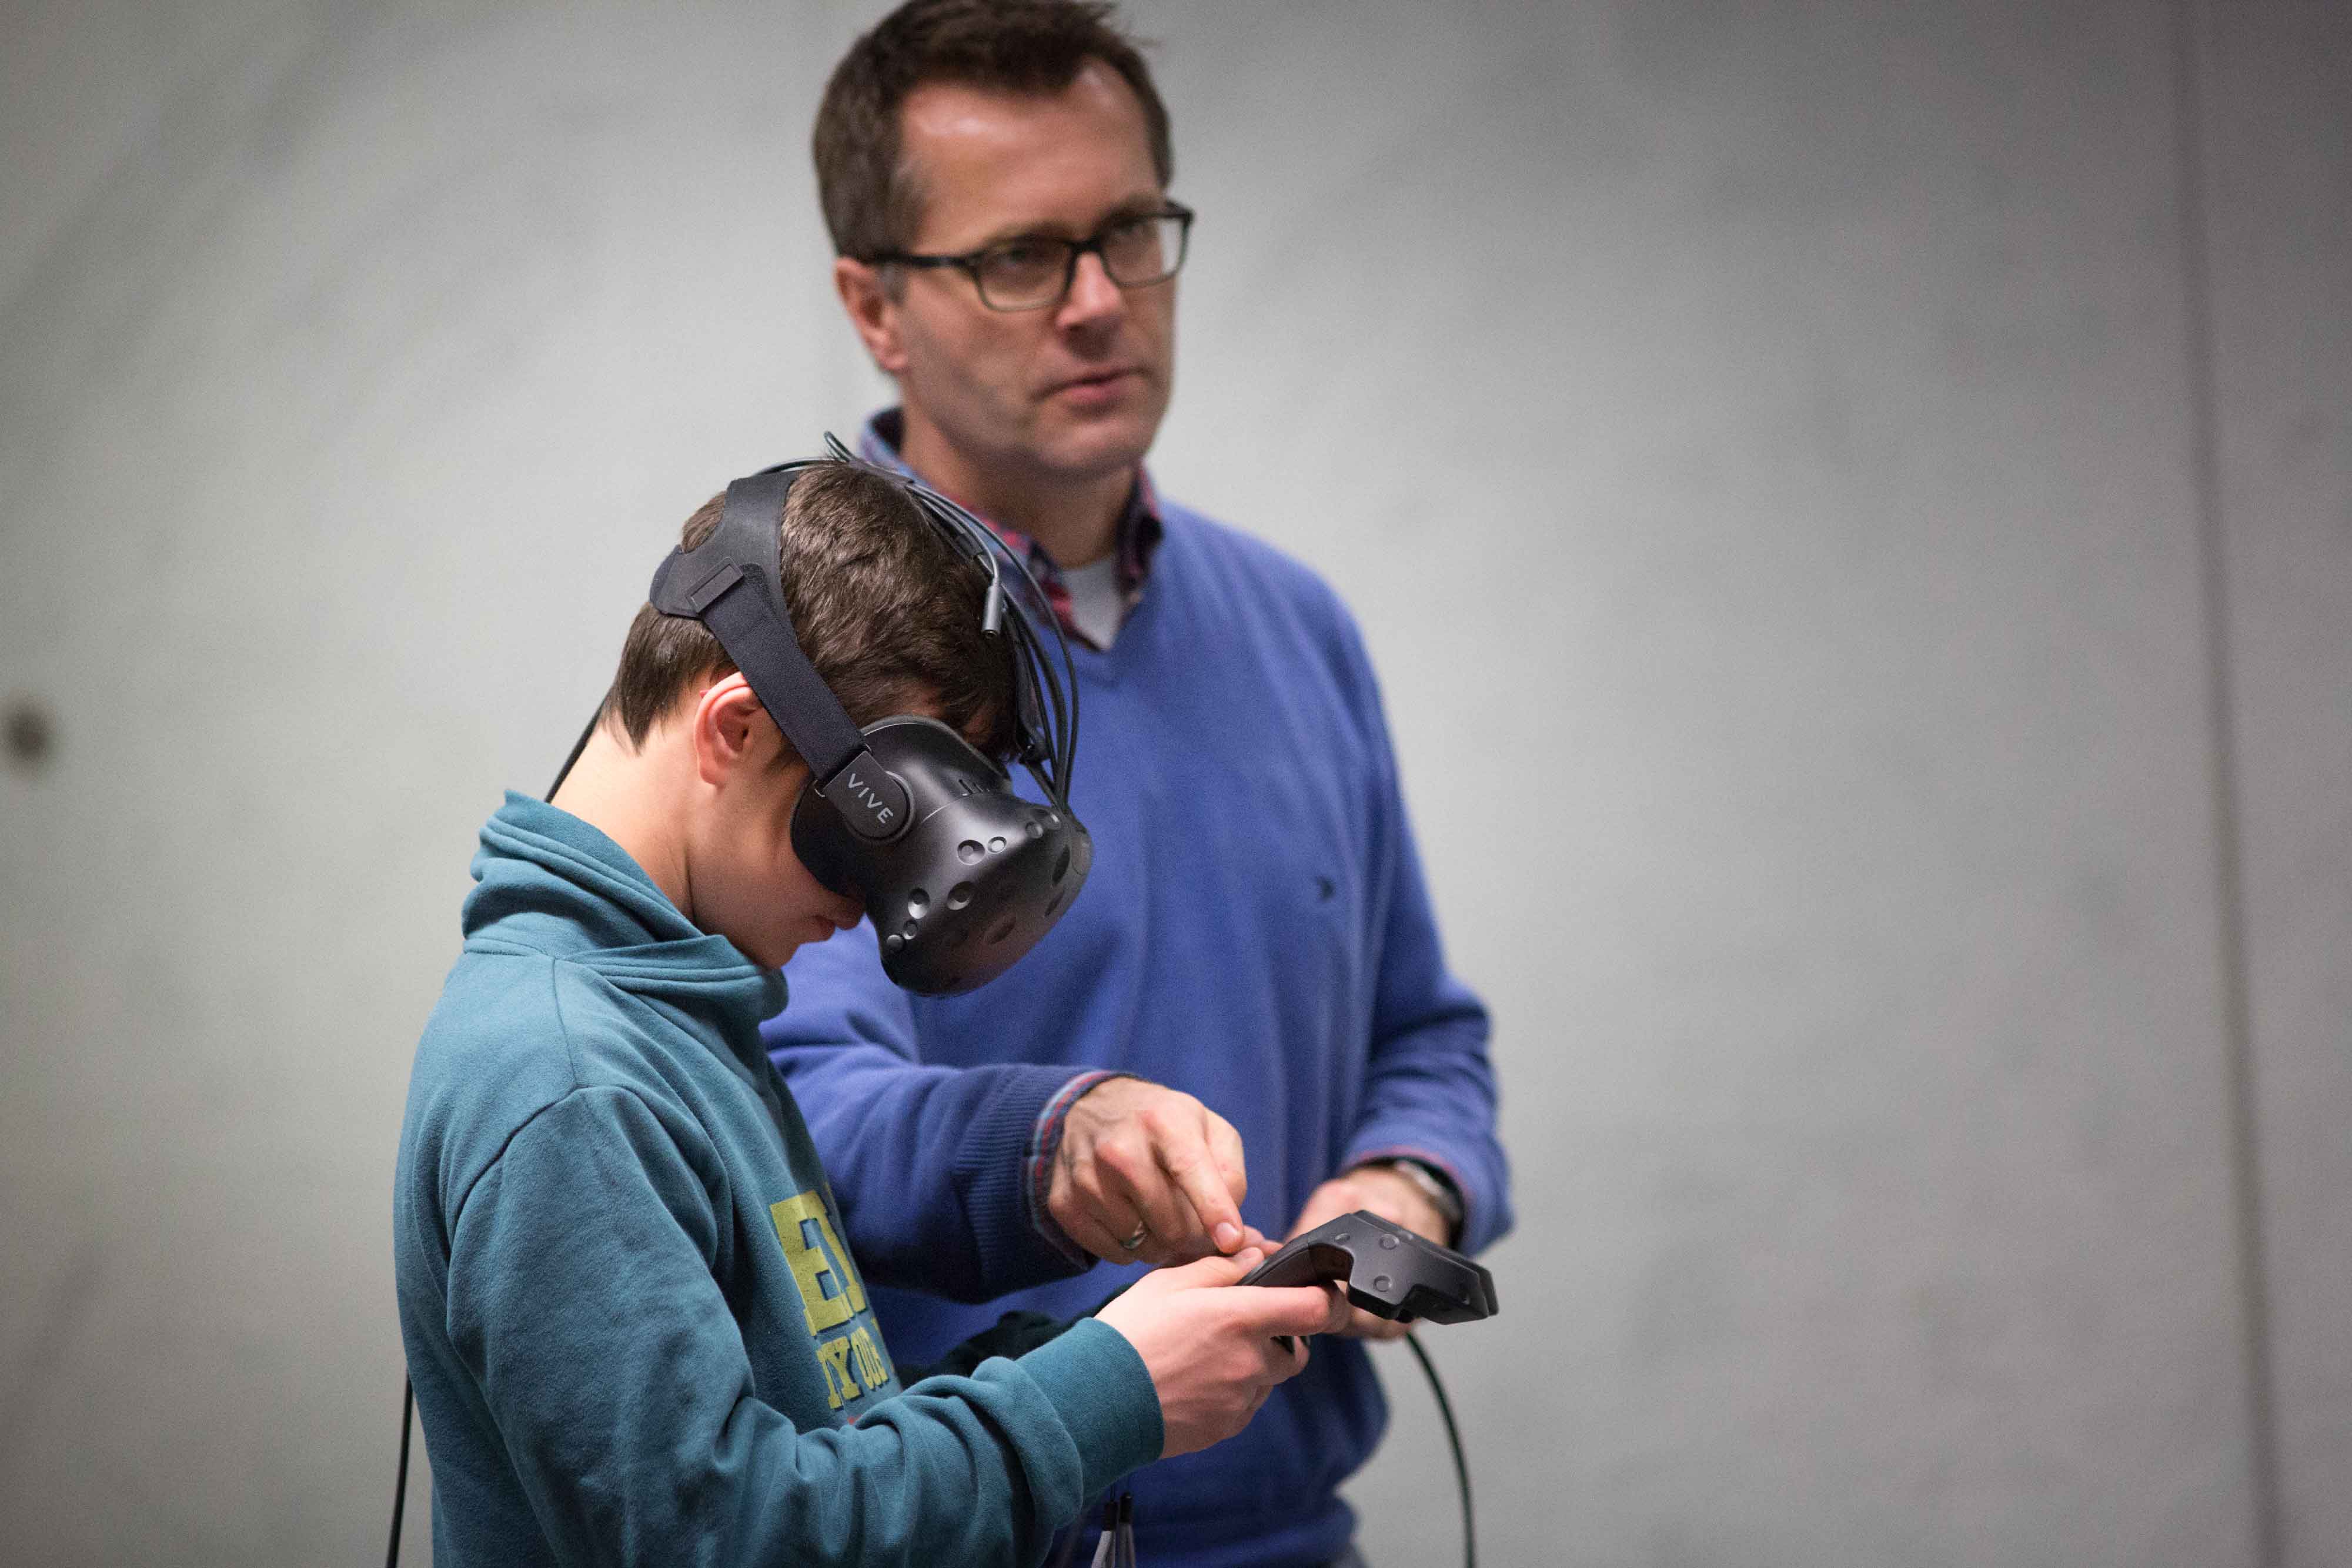 Mit der HTC-Vive, einem Virtual Reality-Helm, können virtuelle Objekte, Personen und Umgebungen frei erkundet werden.